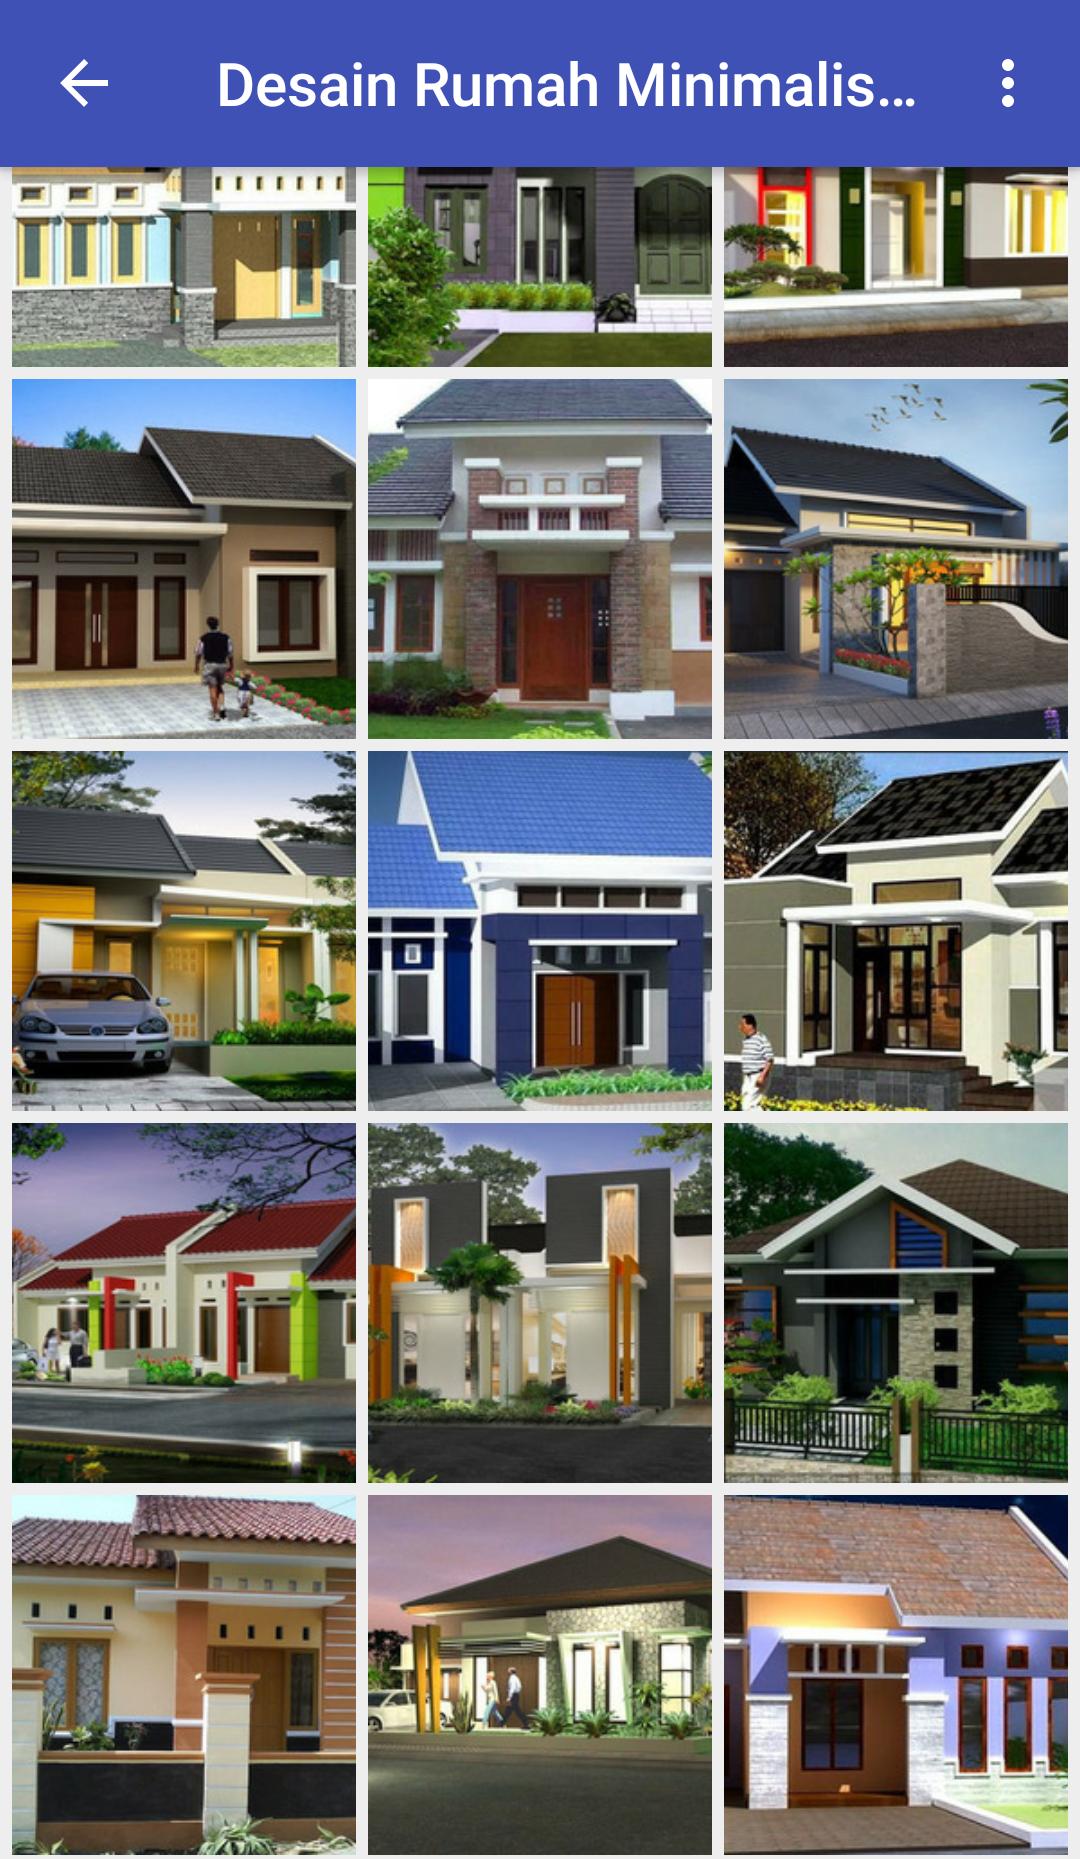 Daftar Download Rumahku Desain Impian Paling Baru Pambabomacom